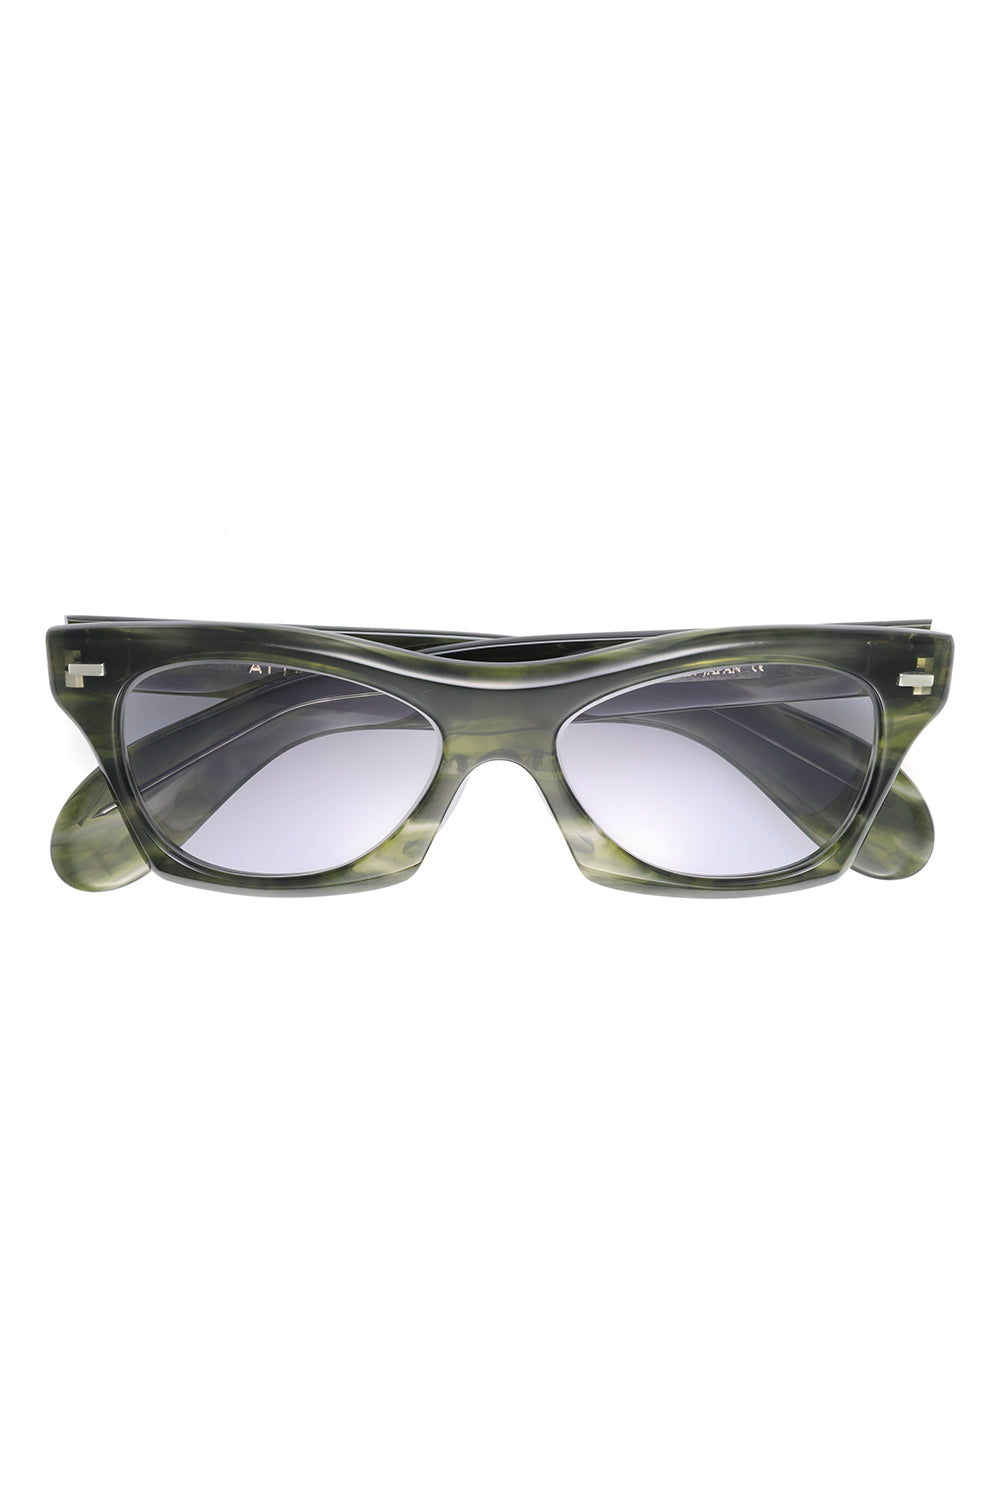 AE0001 Eyewear ”Buddy” -Green Frame-